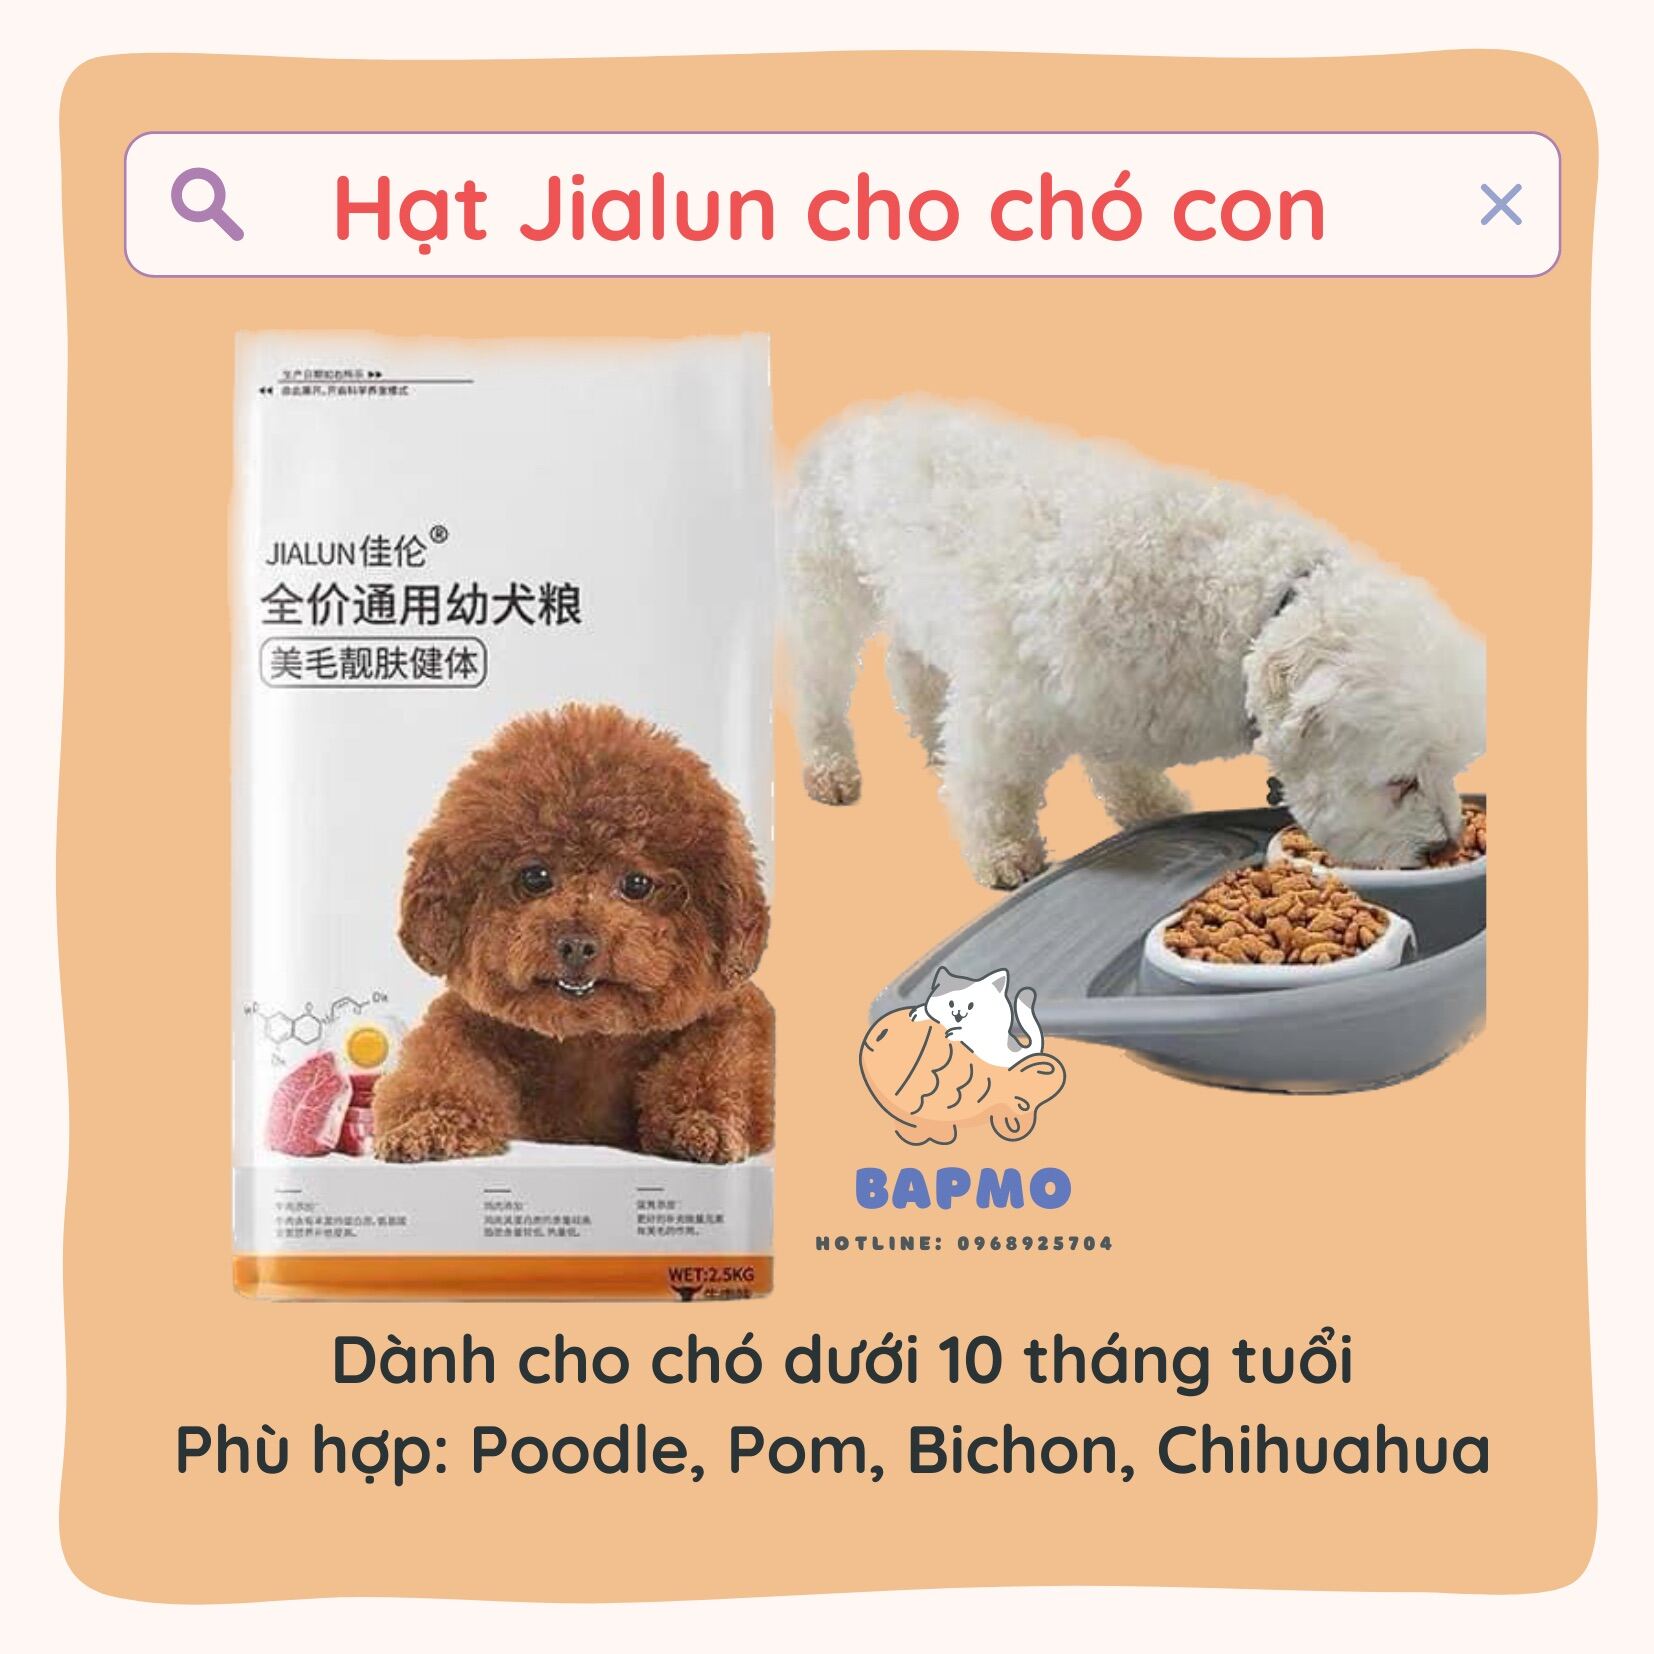 Hạt JIALUN Thức Ăn Chuyên Dụng Cho Chó Poodle - Hạt JIALUN cho chó con